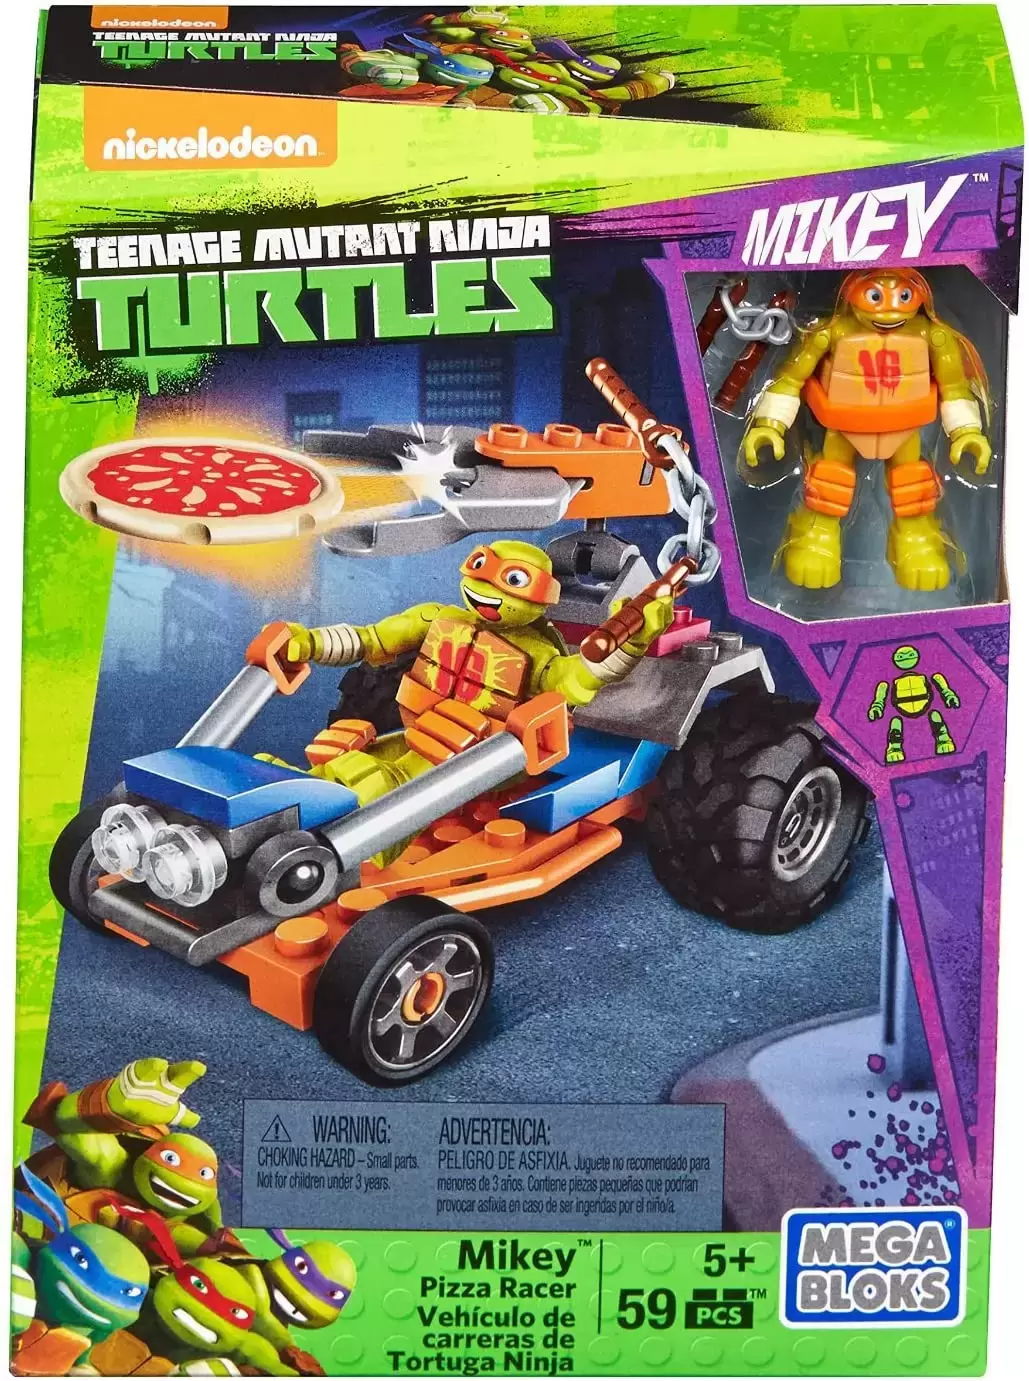 Teenage Mutant Ninja Turtles Mega Bloks - Mikey Pizza Racer